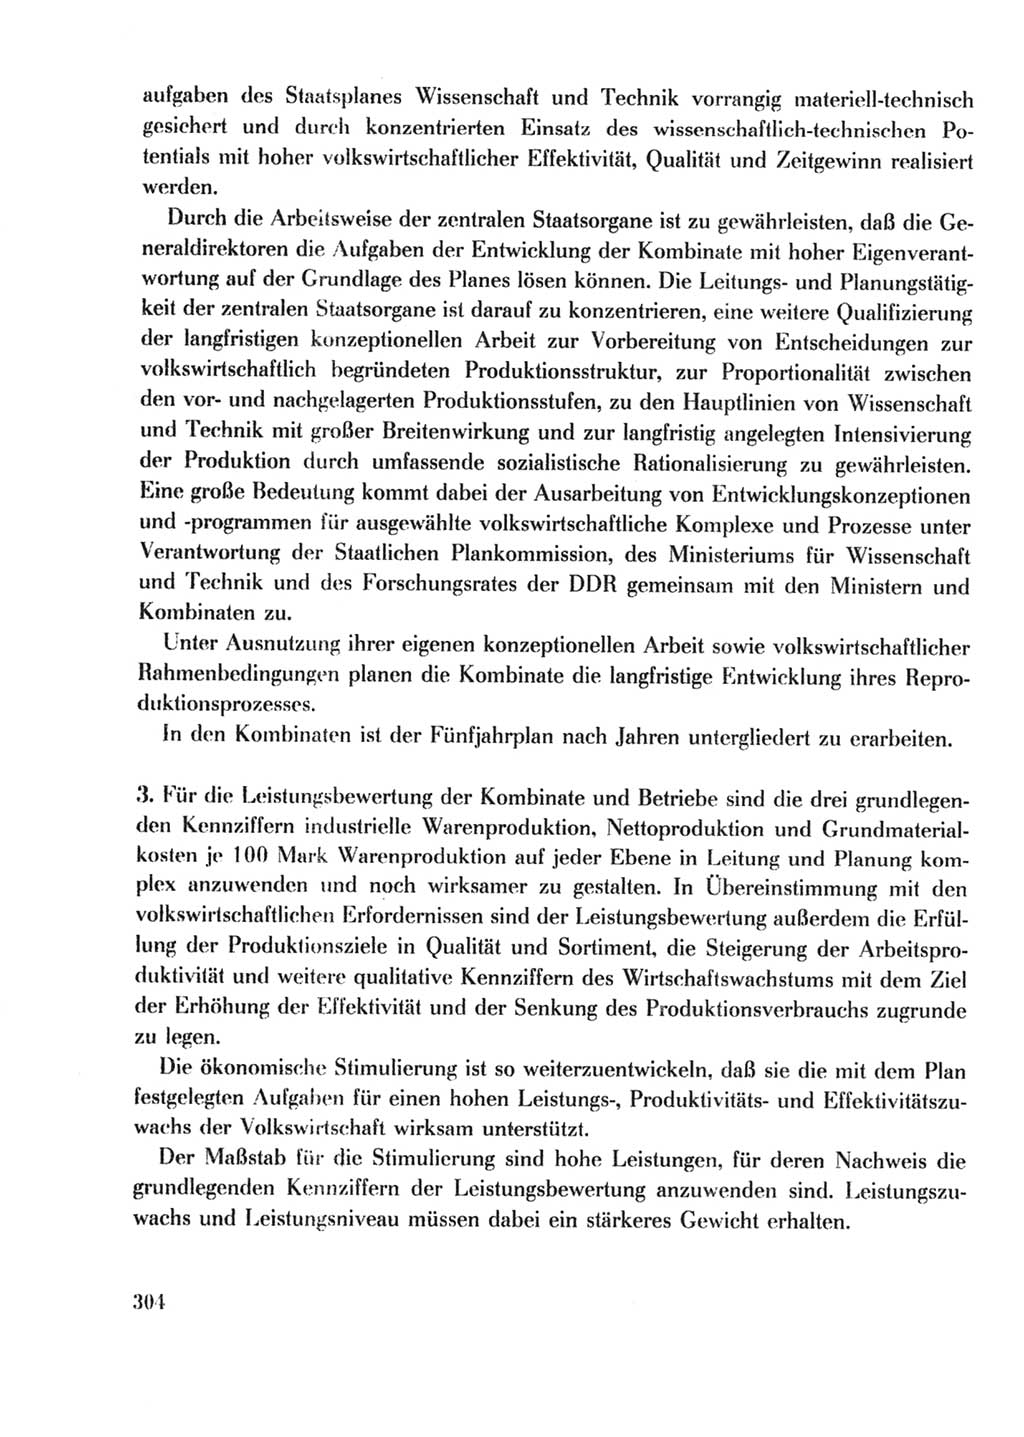 Protokoll der Verhandlungen des Ⅹ. Parteitages der Sozialistischen Einheitspartei Deutschlands (SED) [Deutsche Demokratische Republik (DDR)] 1981, Band 2, Seite 304 (Prot. Verh. Ⅹ. PT SED DDR 1981, Bd. 2, S. 304)